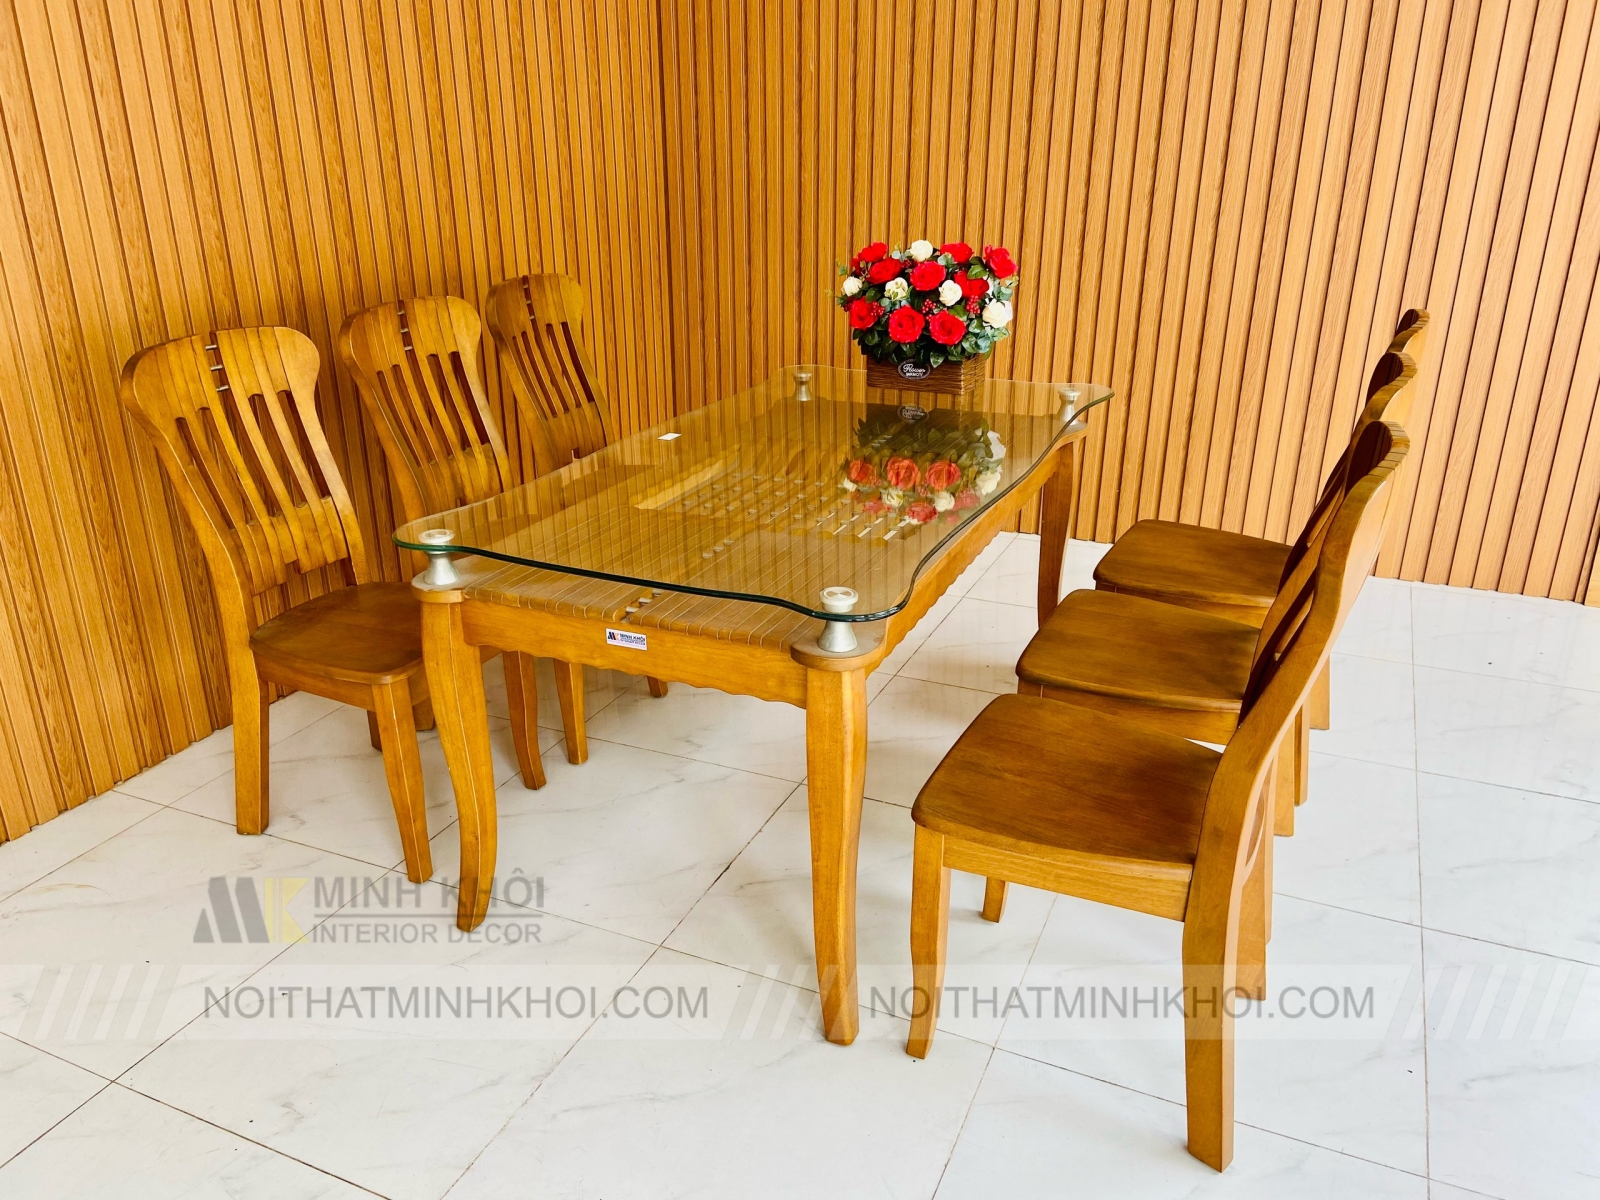 Với thiết kế gỗ Xoan Đào tinh tế cùng mặt kính trong suốt, chiếc bàn ăn đẹp BA235 là sự lựa chọn hoàn hảo để trang trí phòng ăn. Với khả năng chịu lực tốt cùng bề mặt bóng bẩy, chiếc bàn ăn gỗ mặt kính này sẽ làm tăng thêm vẻ đẹp và sang trọng cho phòng ăn của bạn. Hãy đến với Thế Giới Sofa để sở hữu chiếc bàn ăn gỗ mặt kính đẹp nhất!